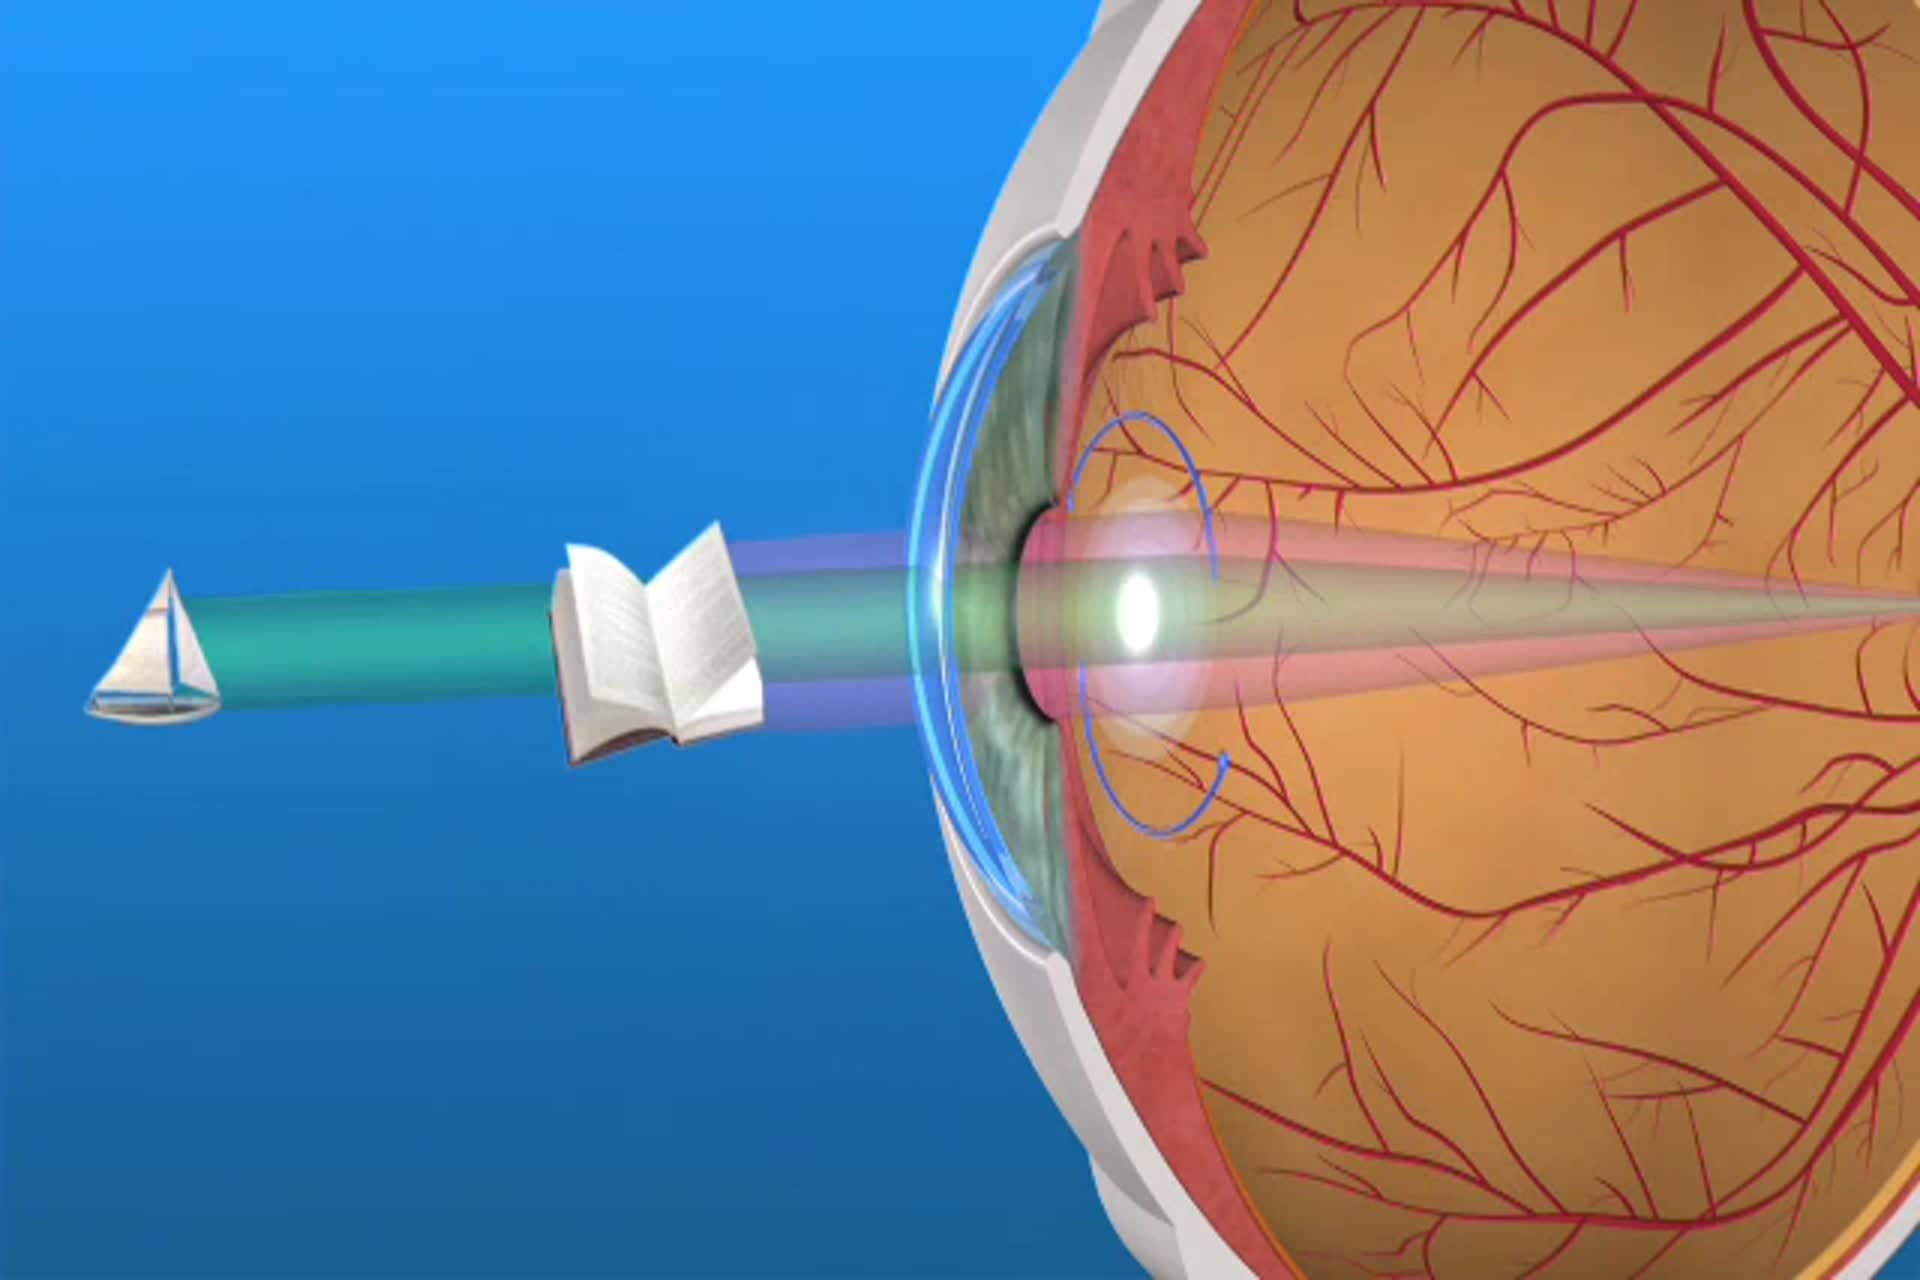 Catarata - ¿Qué es una lente multifocal utilizado en cirugías de cataratas?